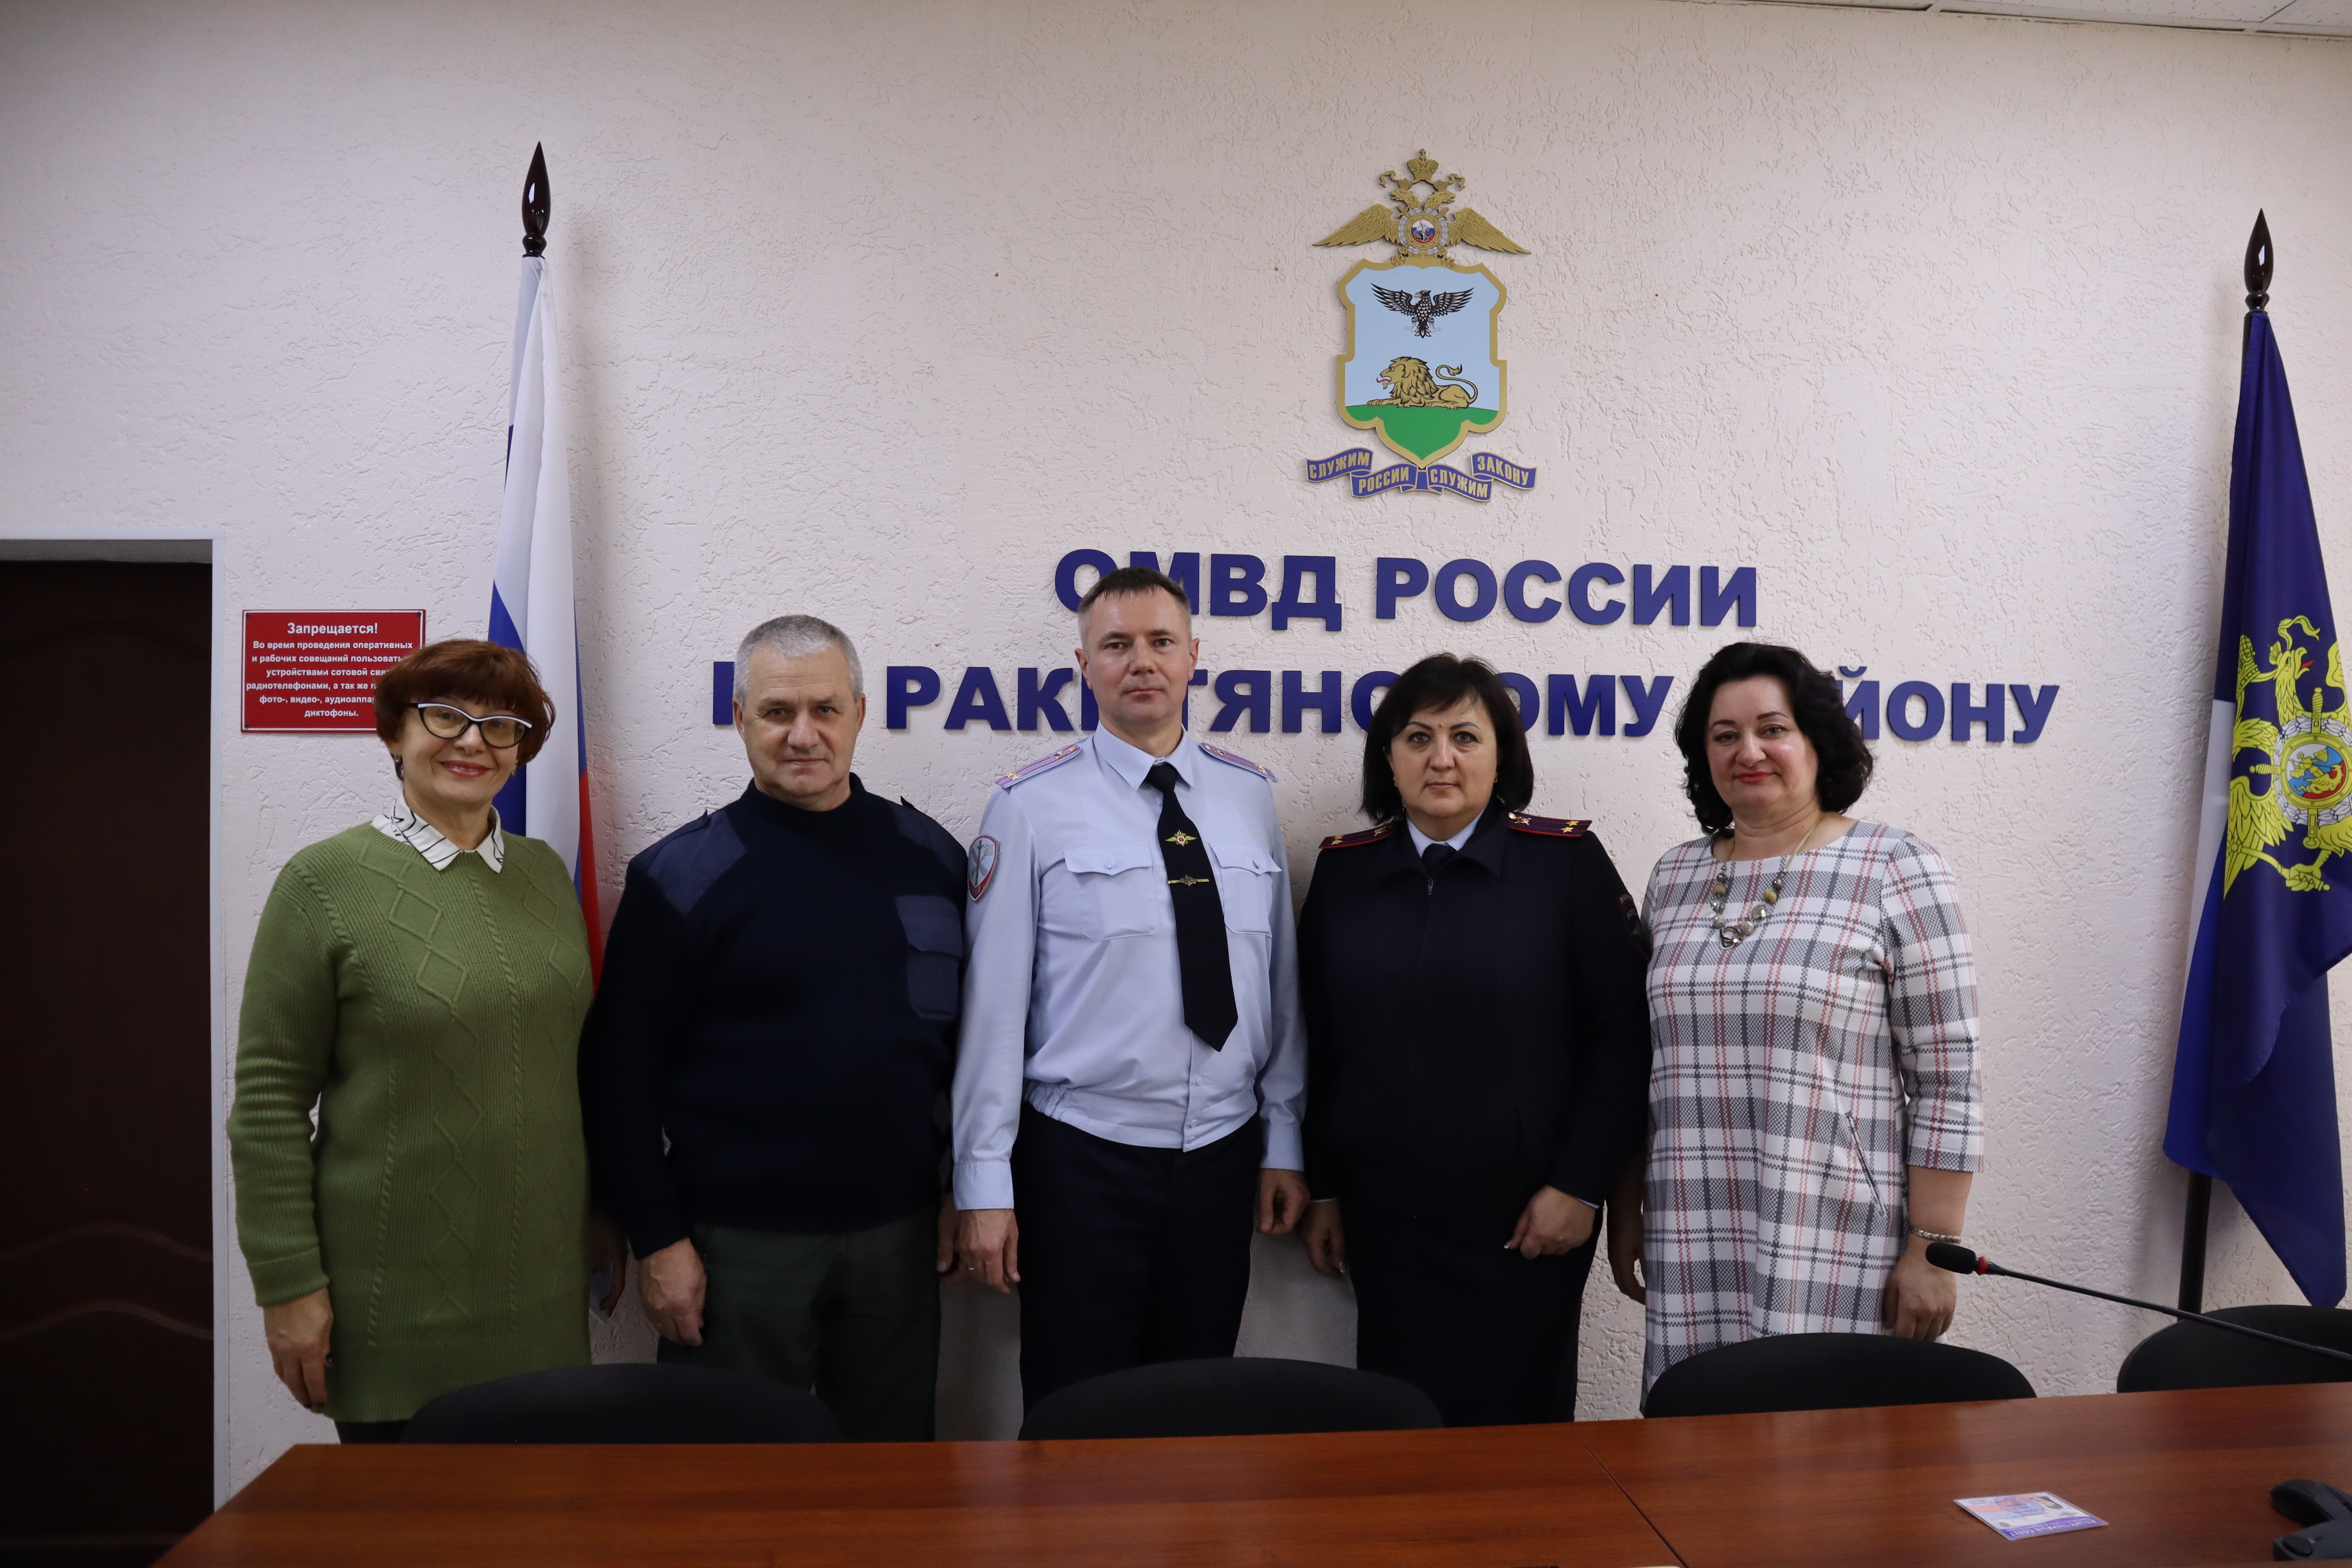 В ОМВД России по Ракитянскому району состоялось очередное заседание Общественного совета при ОМВД.